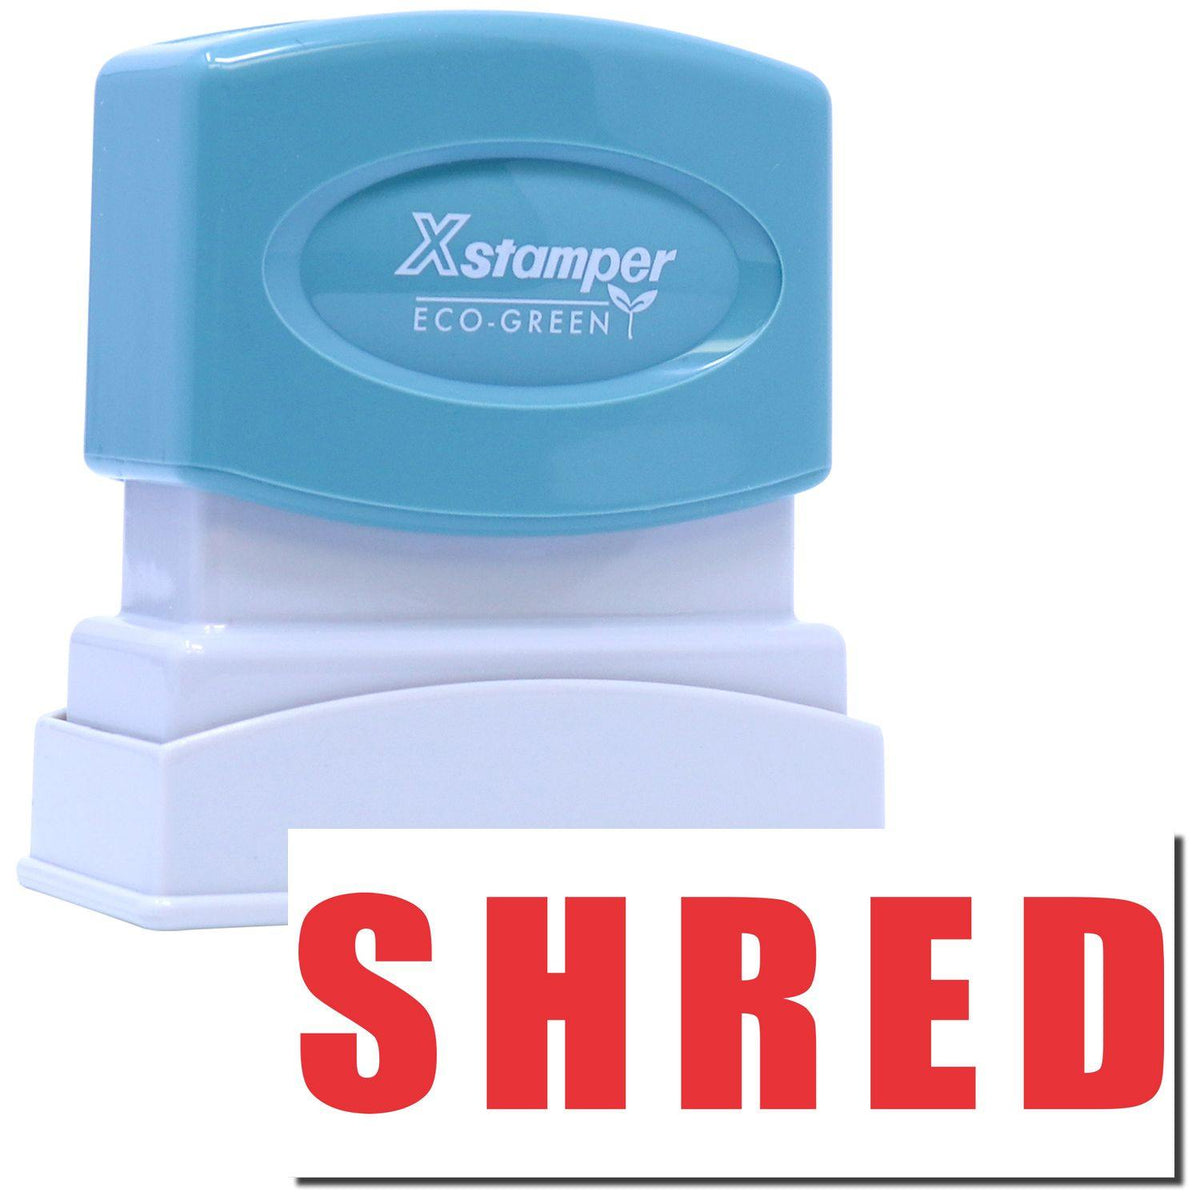 Shred Xstamper Stamp Main Image